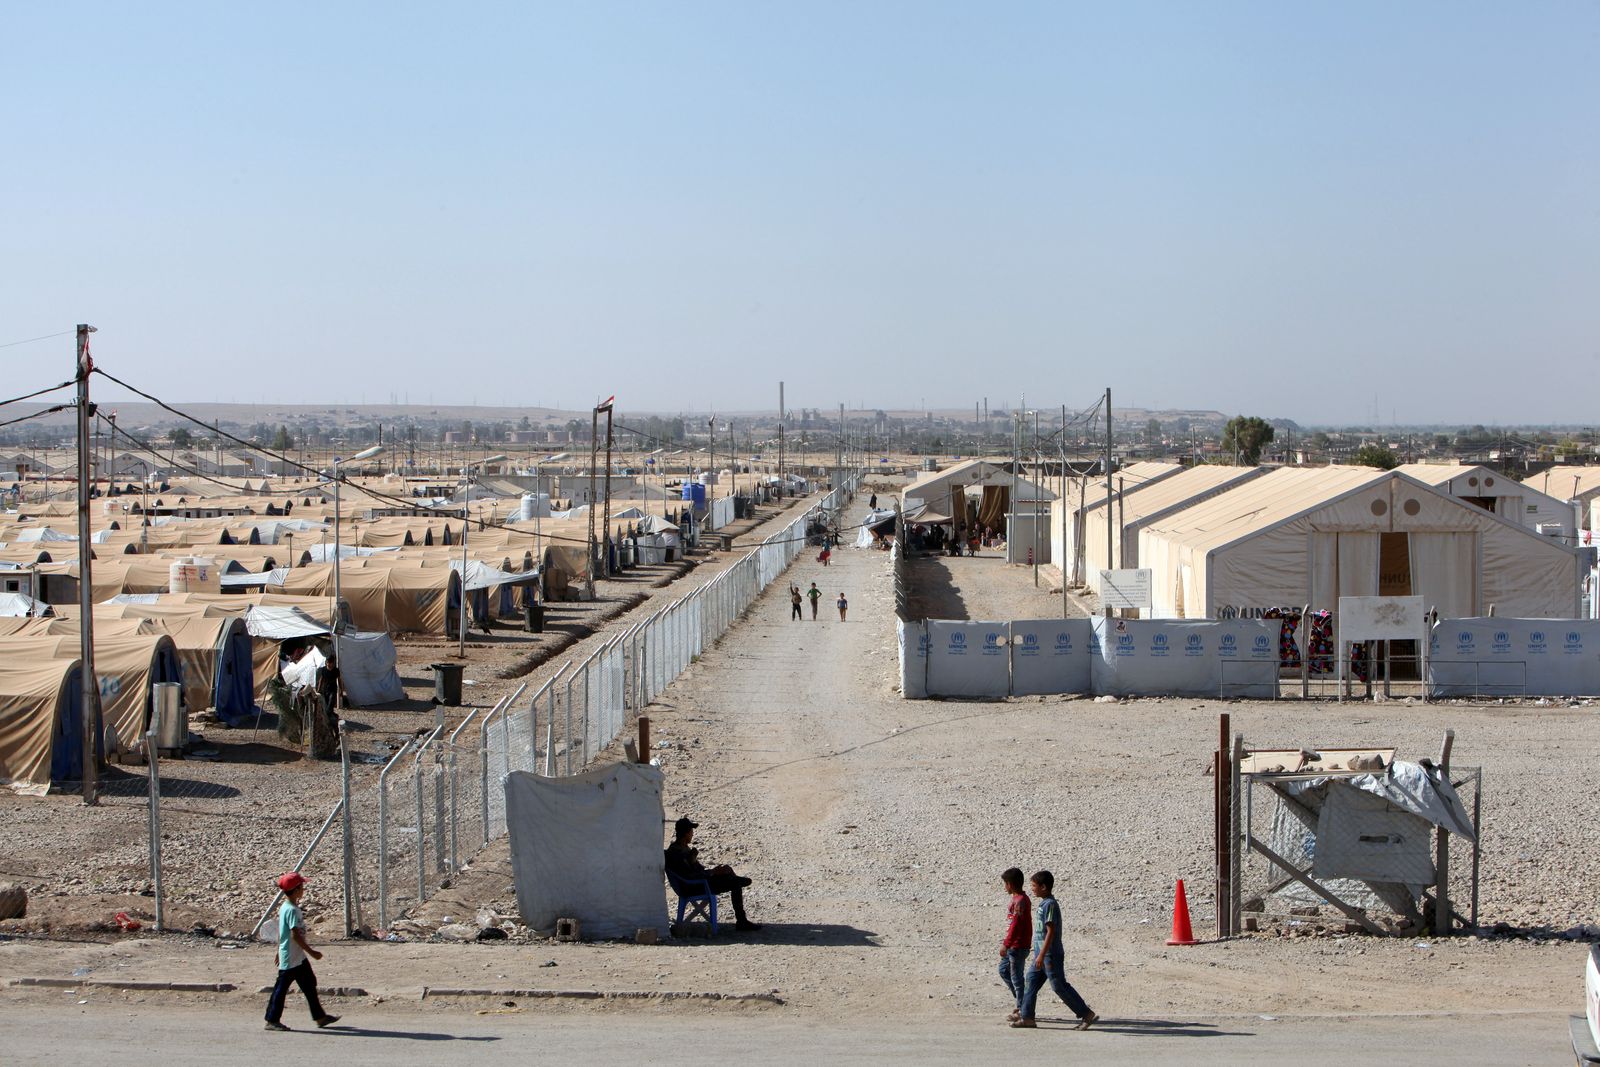 نازحون عراقيون فروا من منازلهم في مخيم حمام العليل جنوب الموصل، في العراق، وذلك إثر الصراع بين القوات العراقية وتنظيم داعش، 9 سبتمبر 2017 - REUTERS